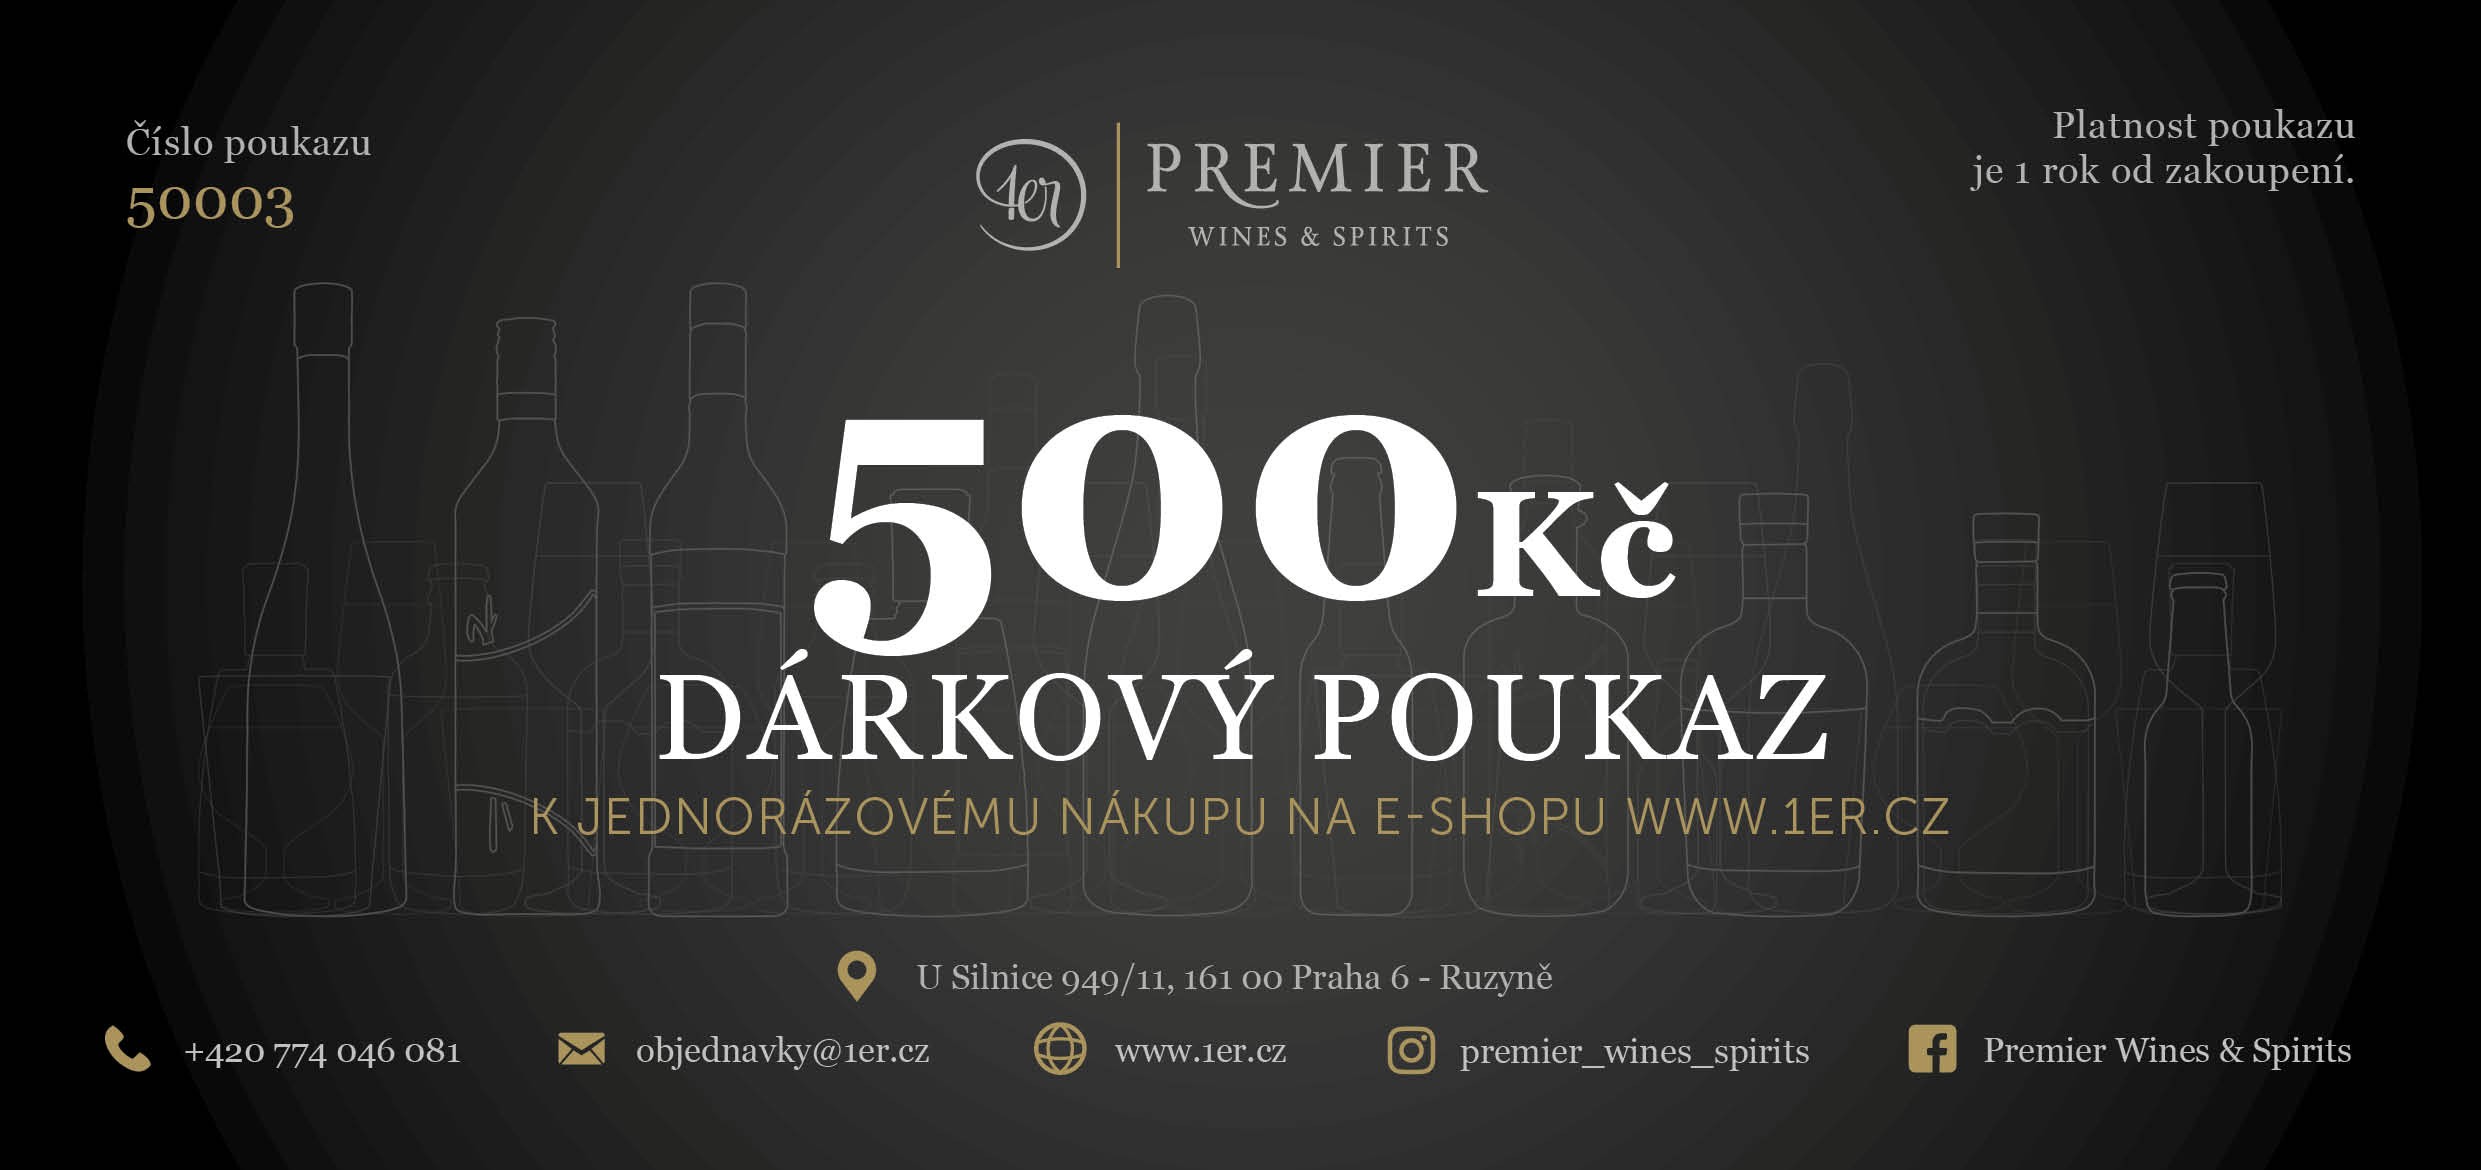 Premier Wines & Spirits Dárkový poukaz v hodnotě 500 Kč